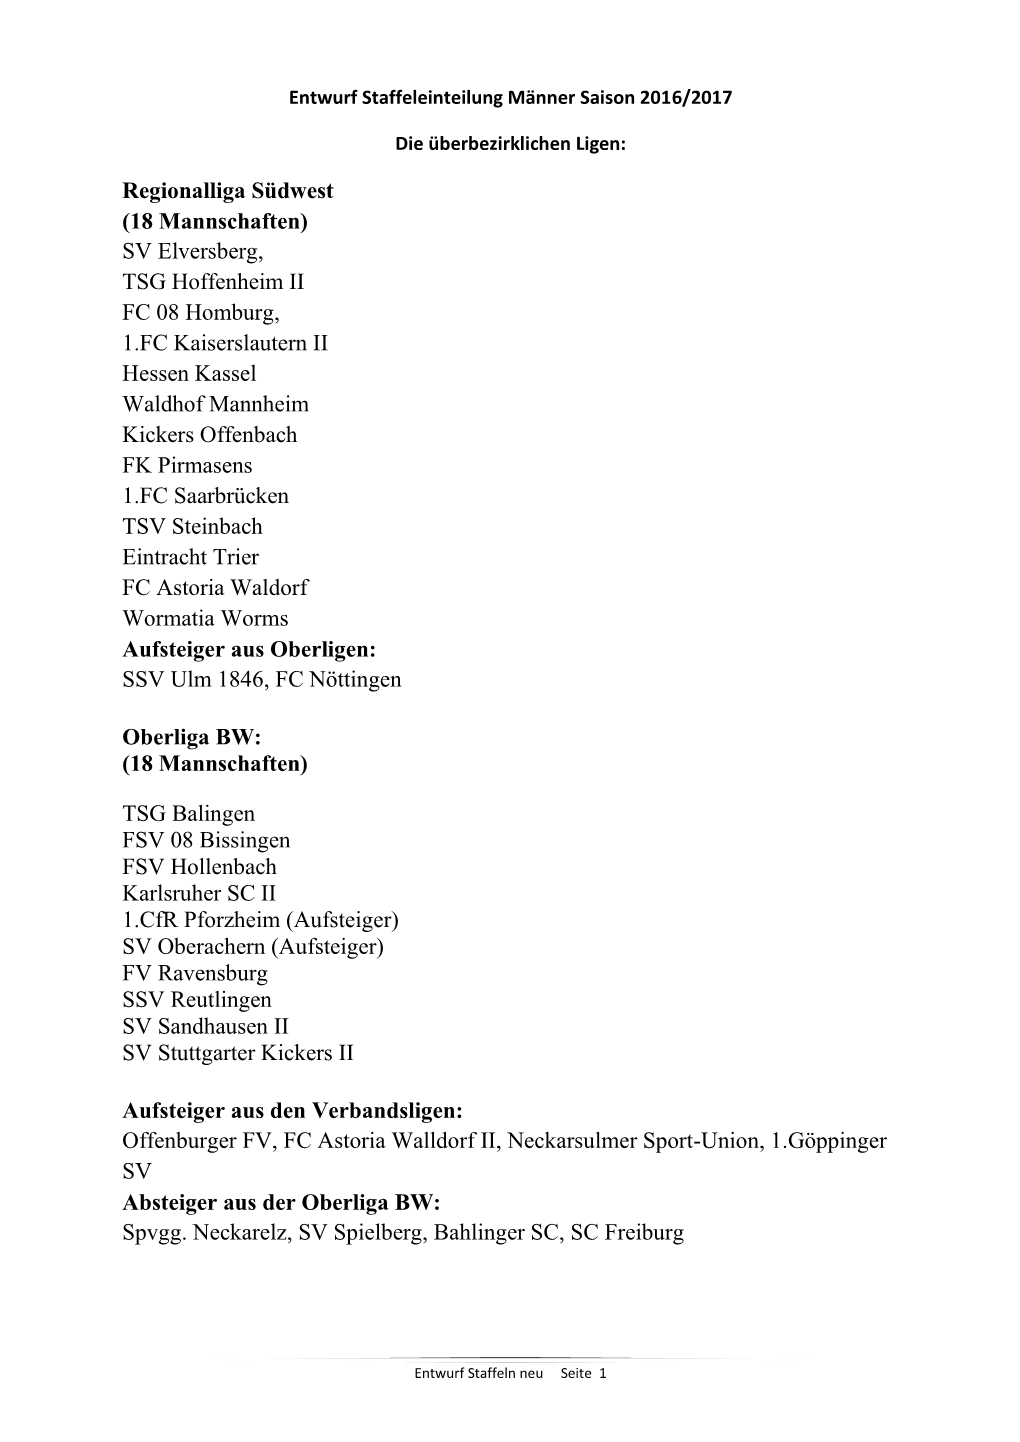 Regionalliga Südwest (18 Mannschaften) SV Elversberg, TSG